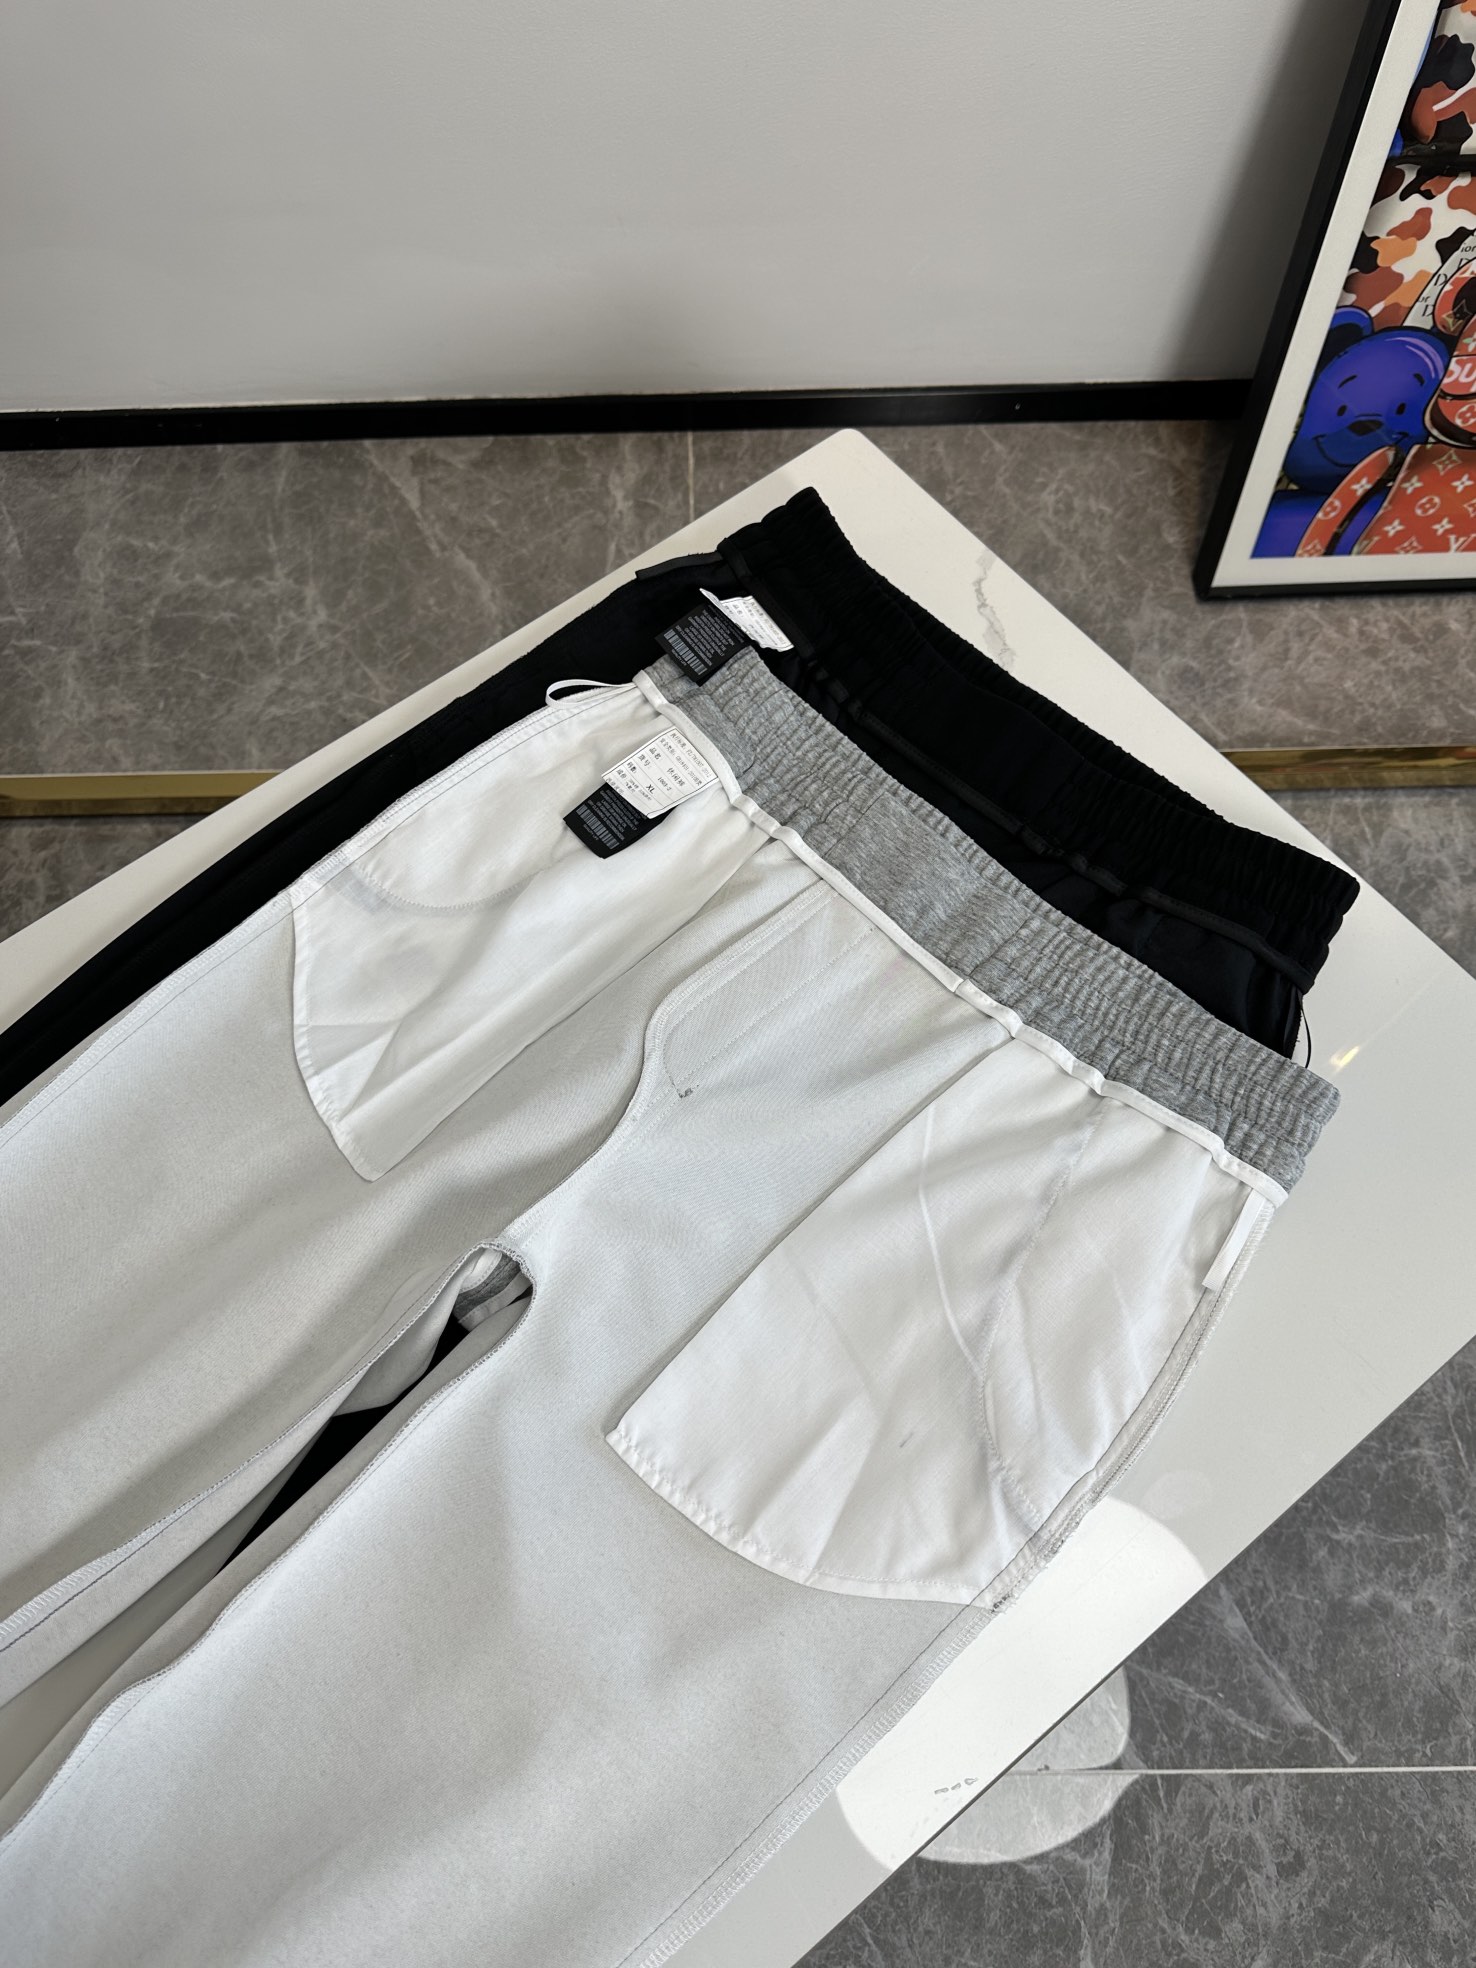 欧货P普家-234ss春夏新款进口纯棉质地复合面料再见基础款帅气卫裤.....一线时尚品牌出色独到的设计